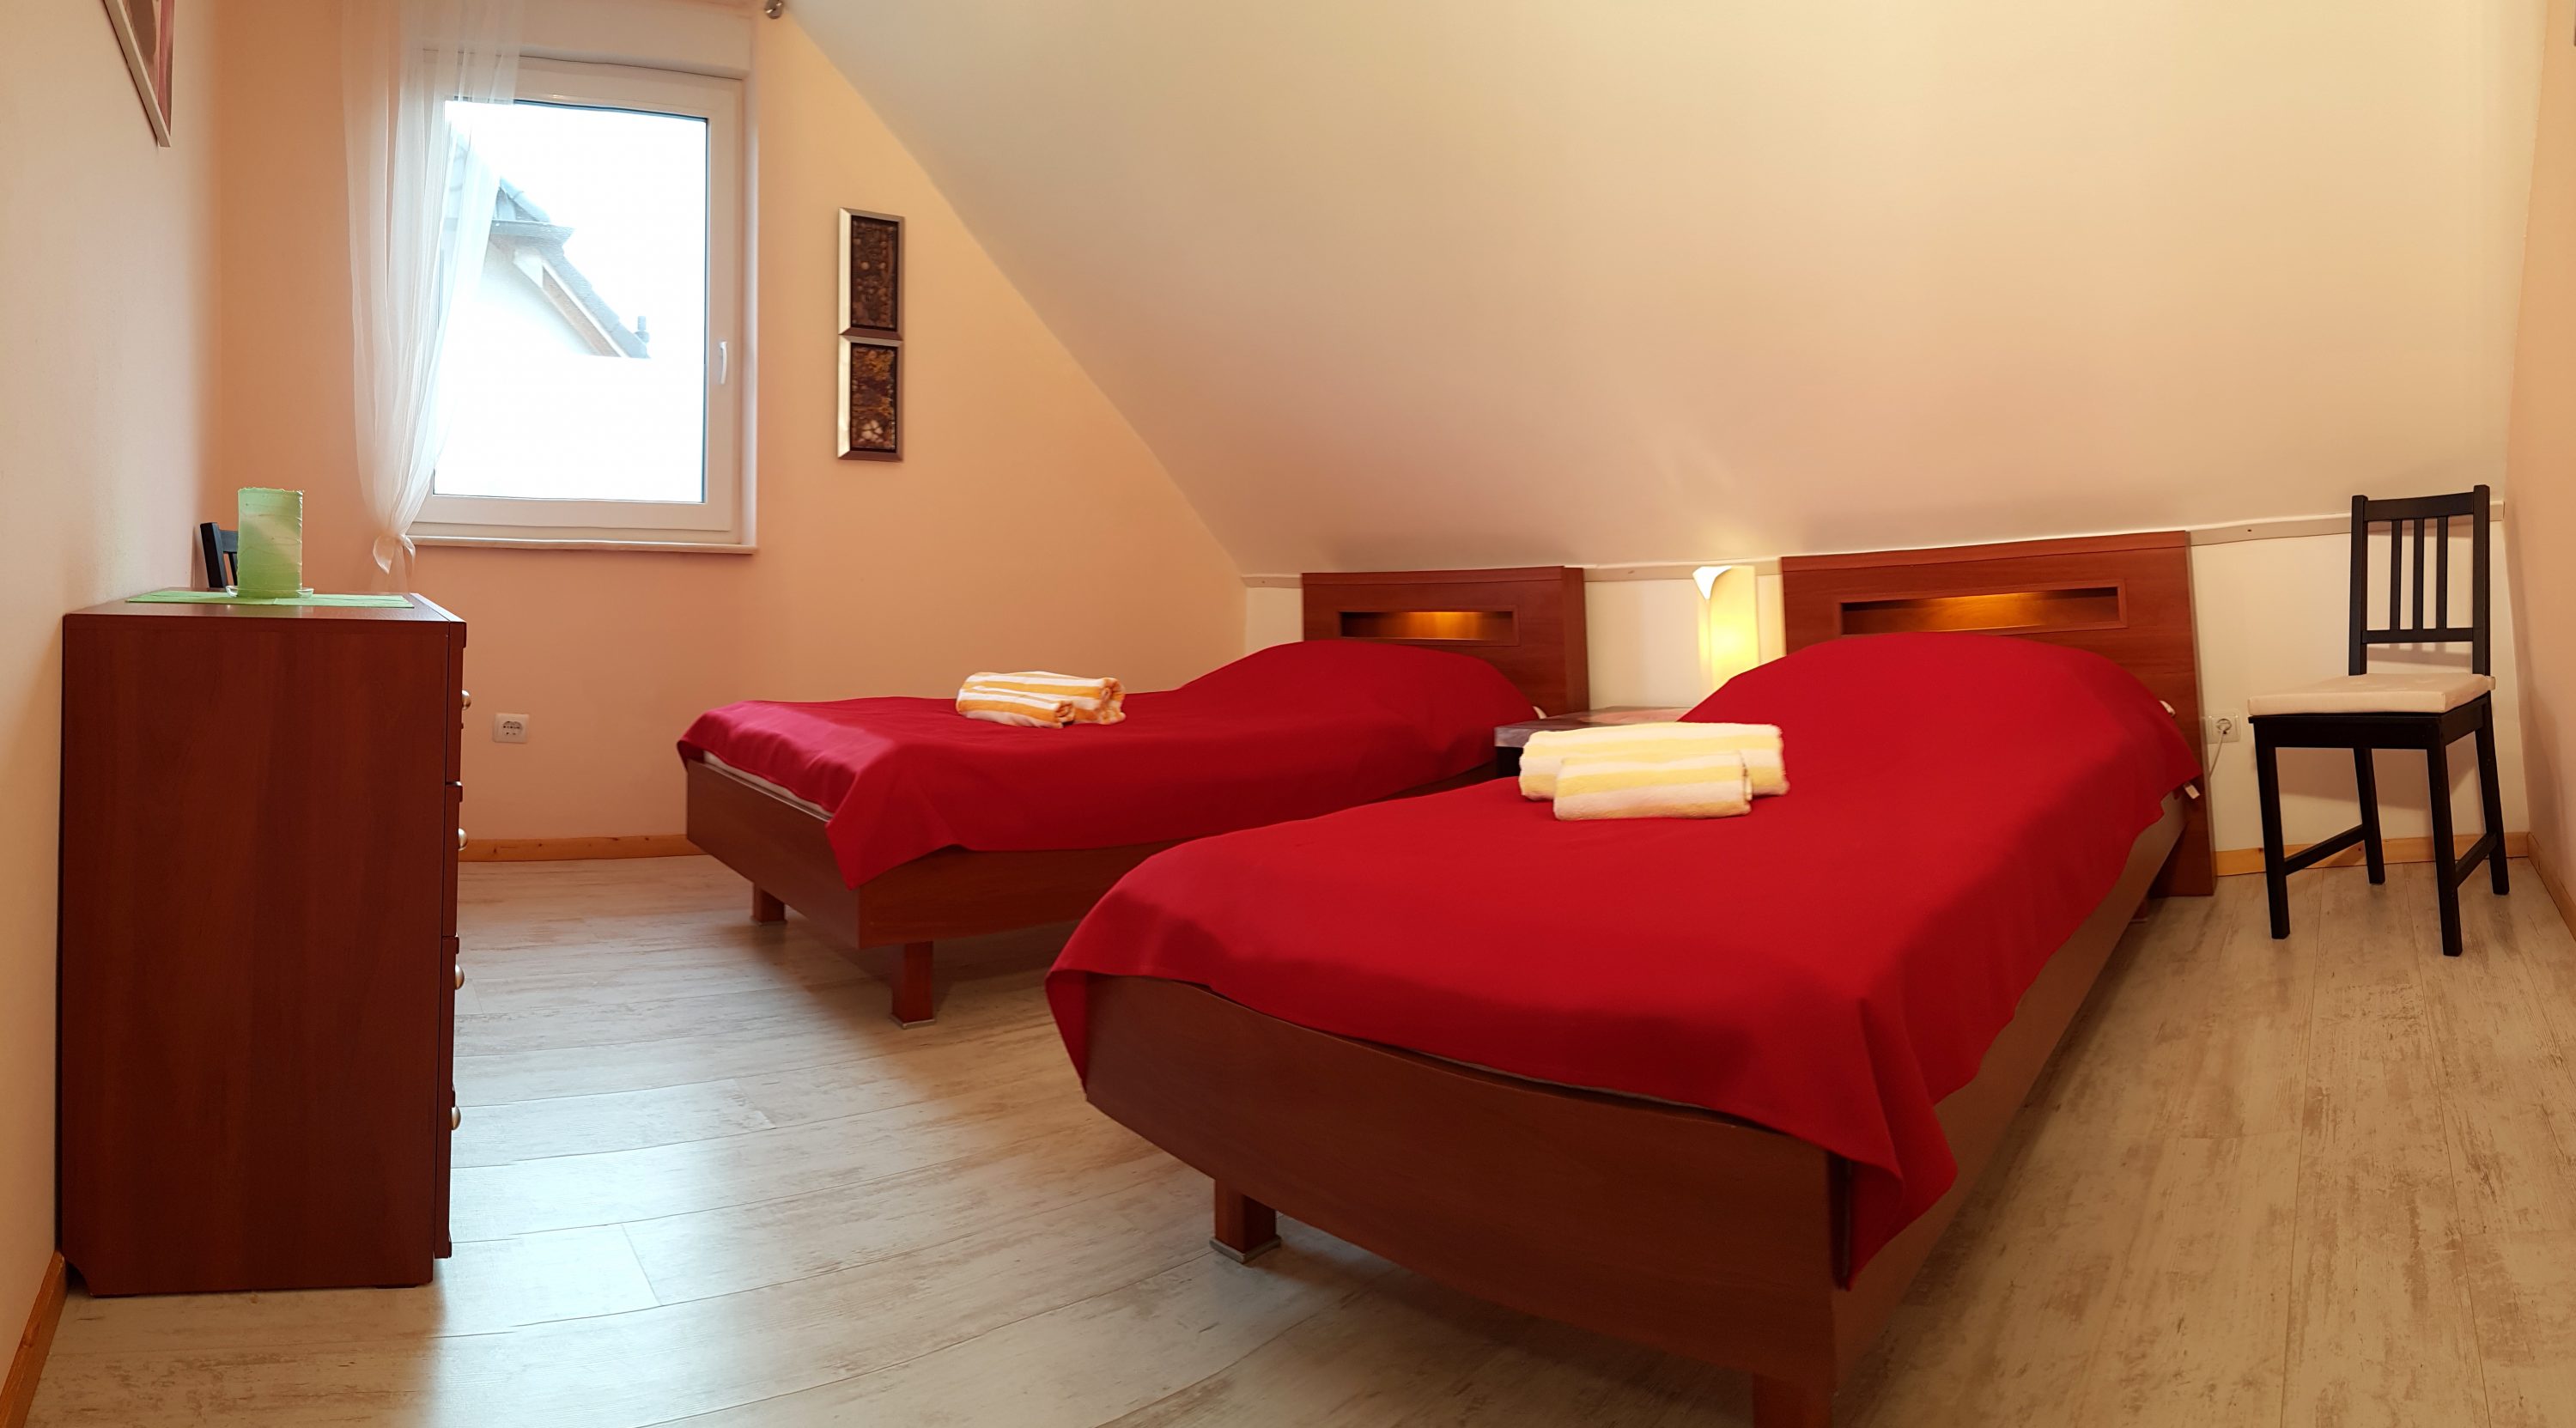 Schlafzimmer mit Einzelbetten nach Renovierung Ferienwohnung Ganzlin bei Plau am See Mecklenburgische Seenplatte